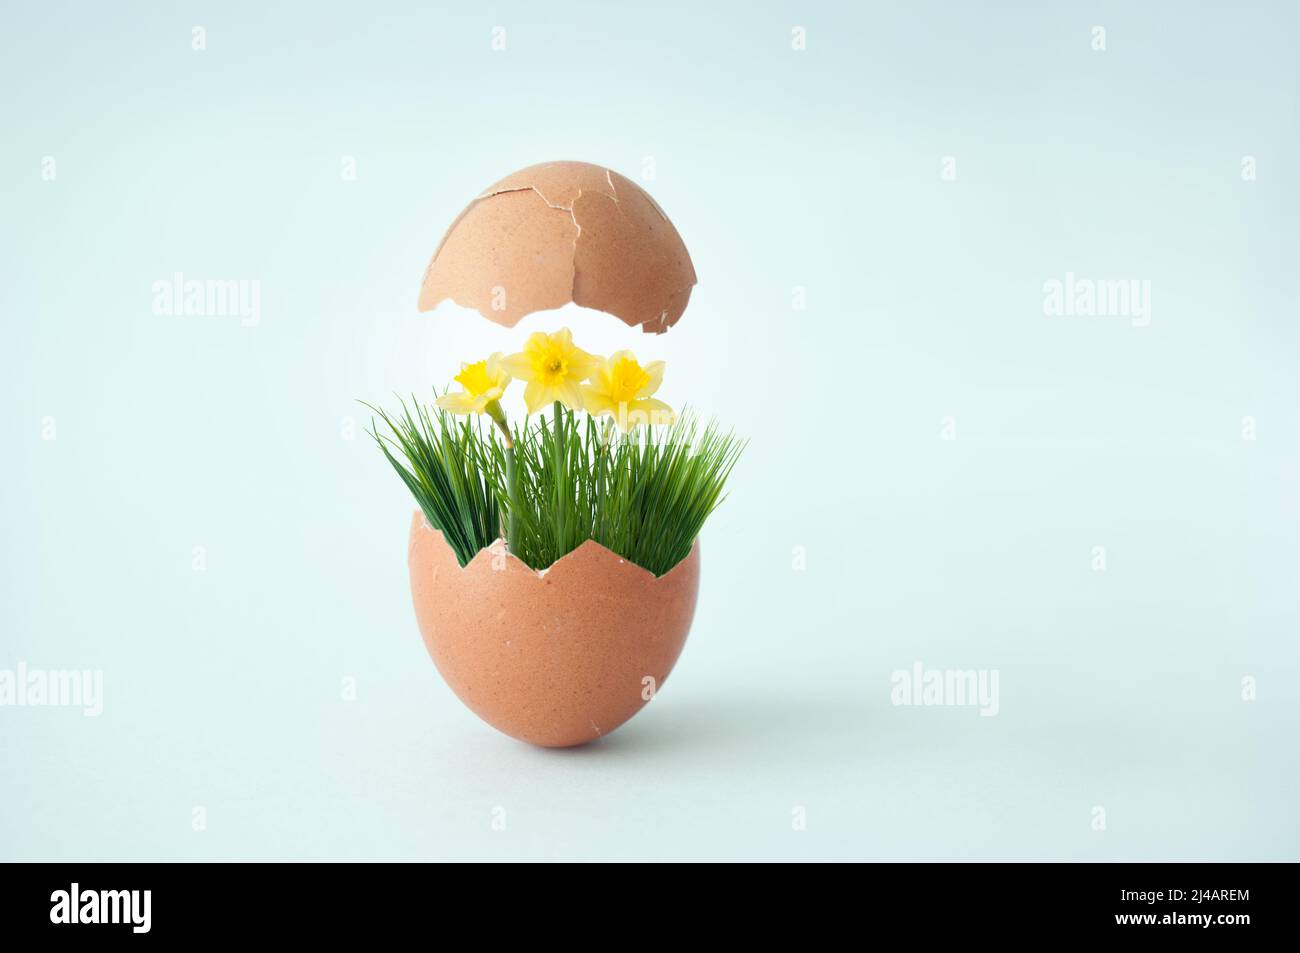 Huevo roto con la parte superior que revela hierba de primavera con narcisos y mariposas, concepto de primavera de pascua Foto de stock